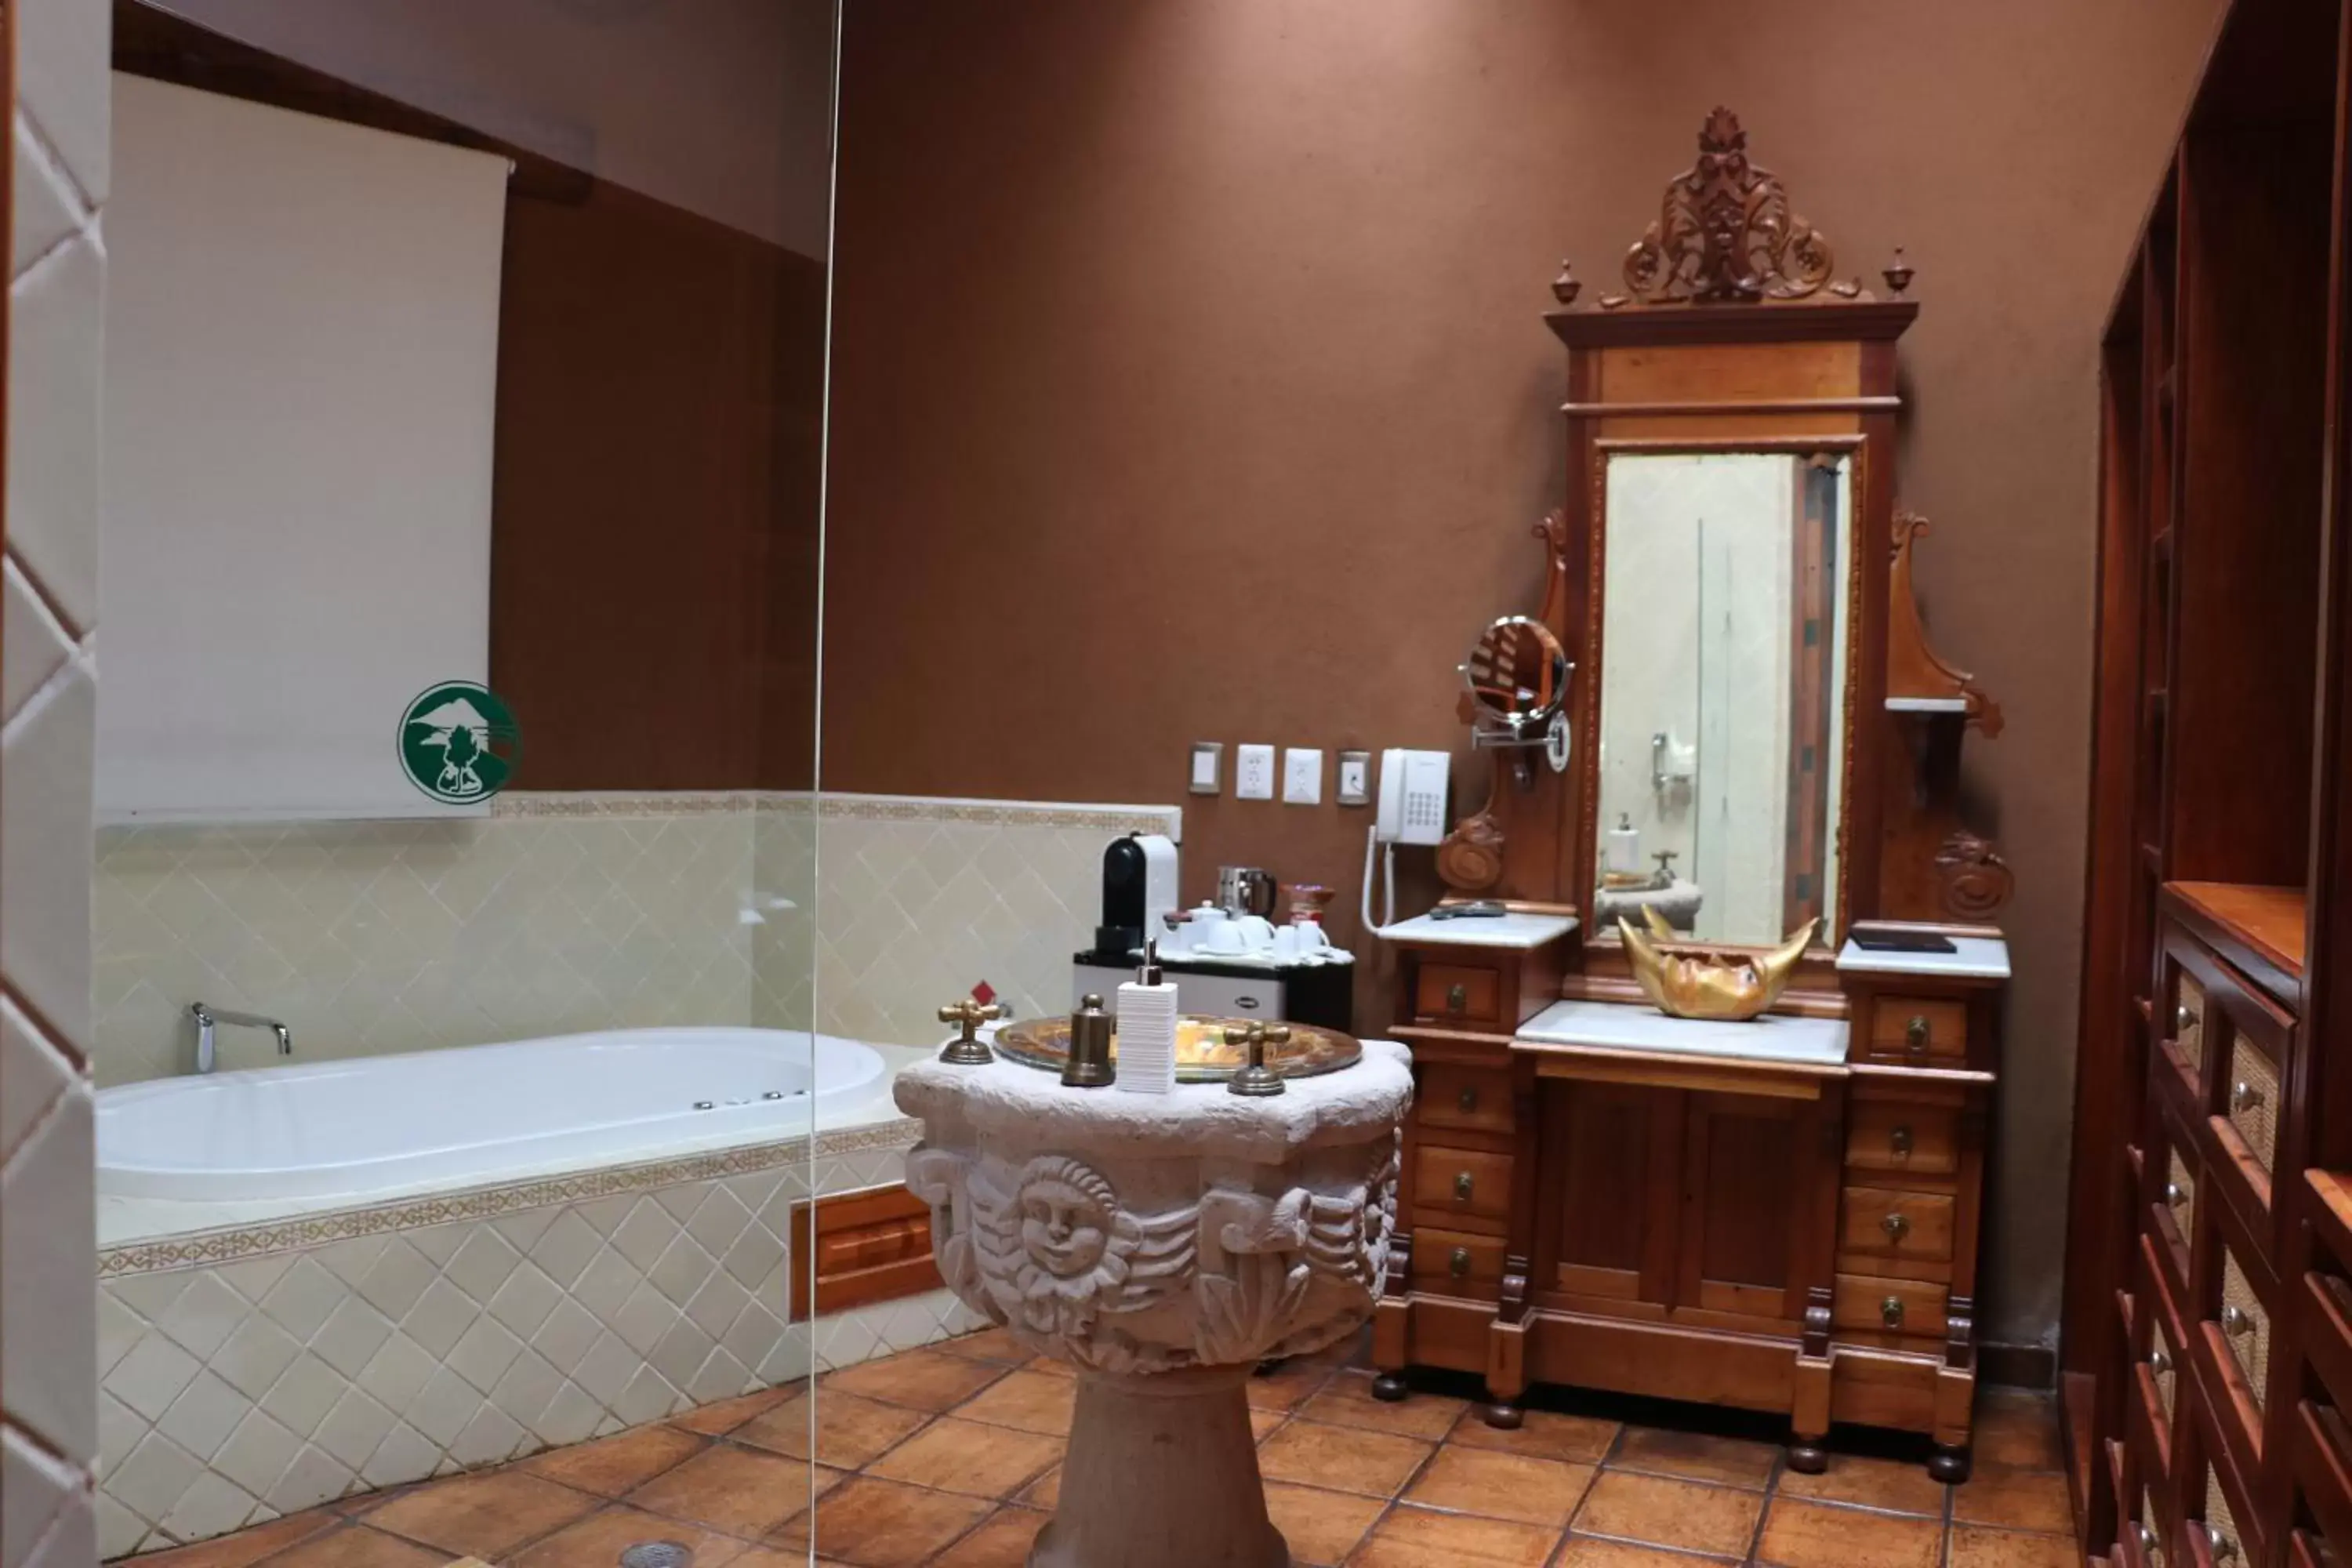 Bathroom in Hacienda Ucazanaztacua